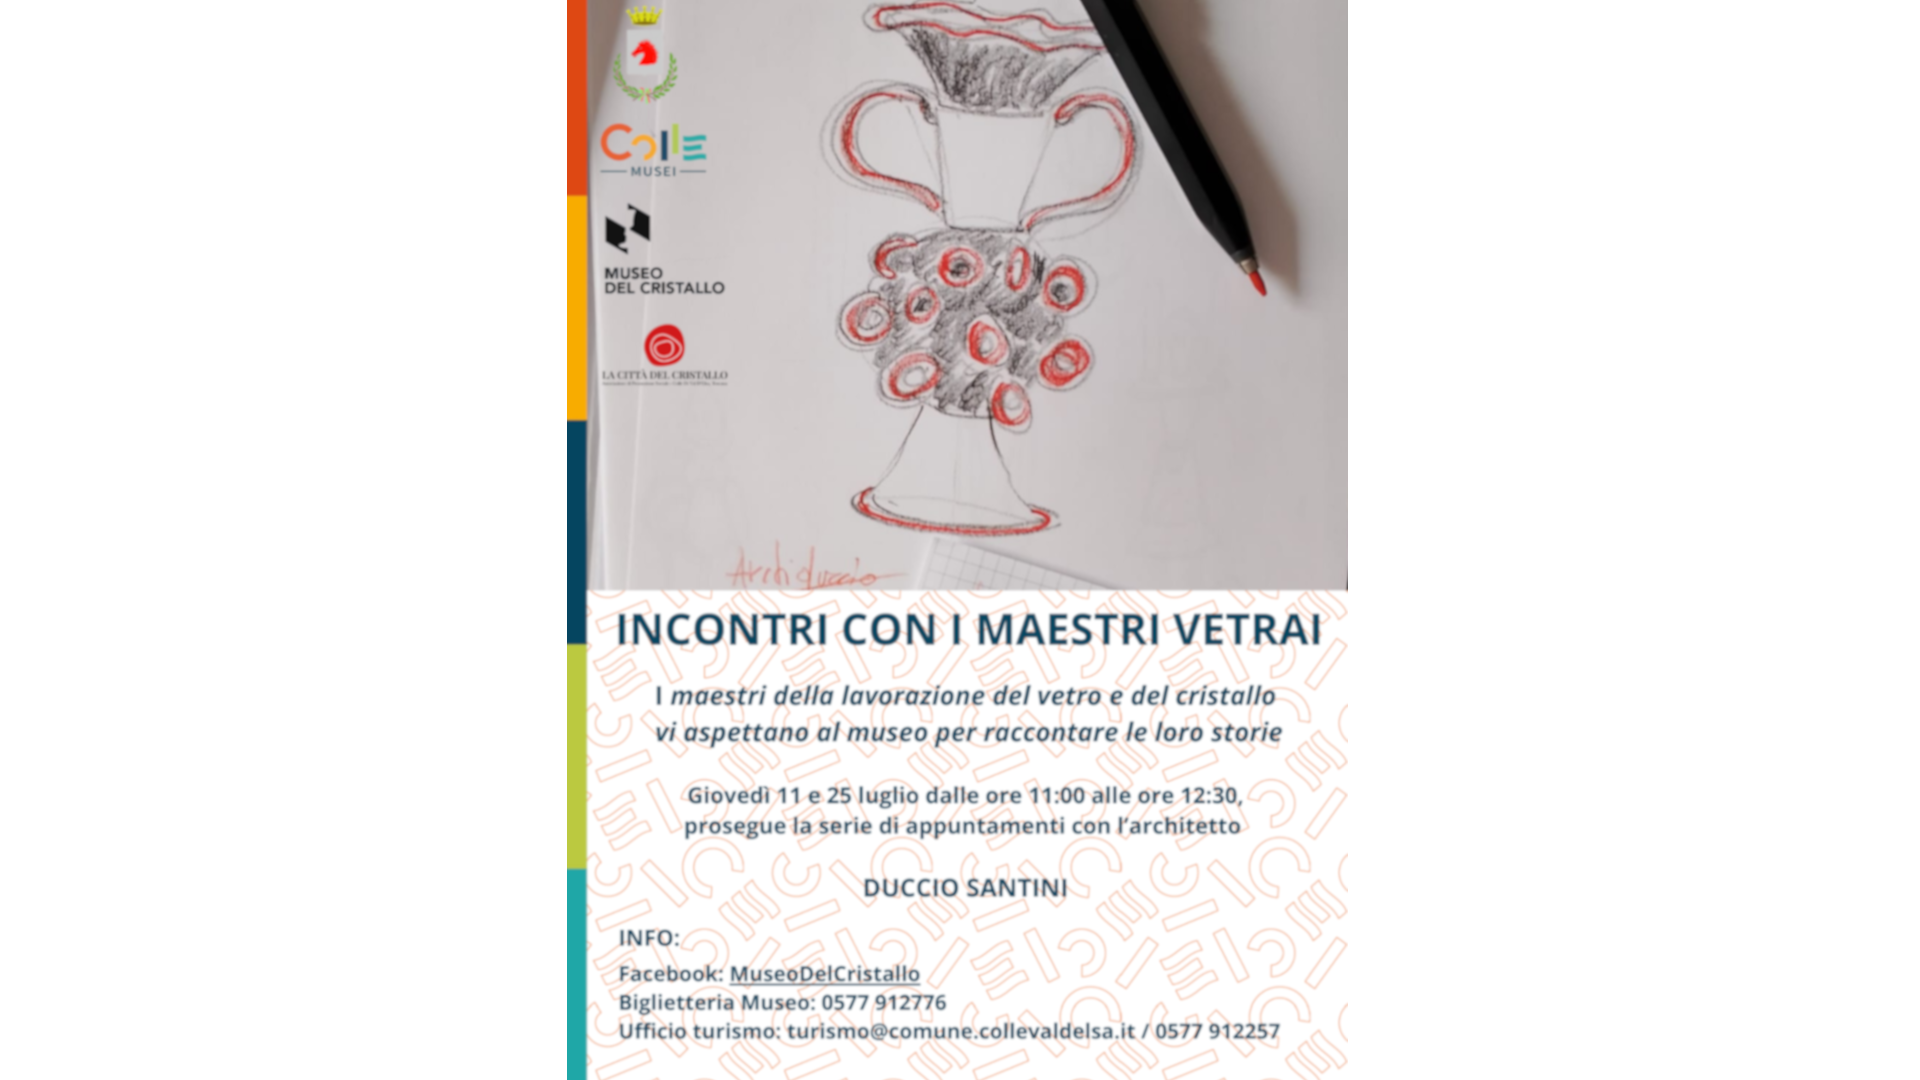 INCONTRI CON I MAESTRI VETRAI - 11 e 25 luglio - Museo del Cristallo